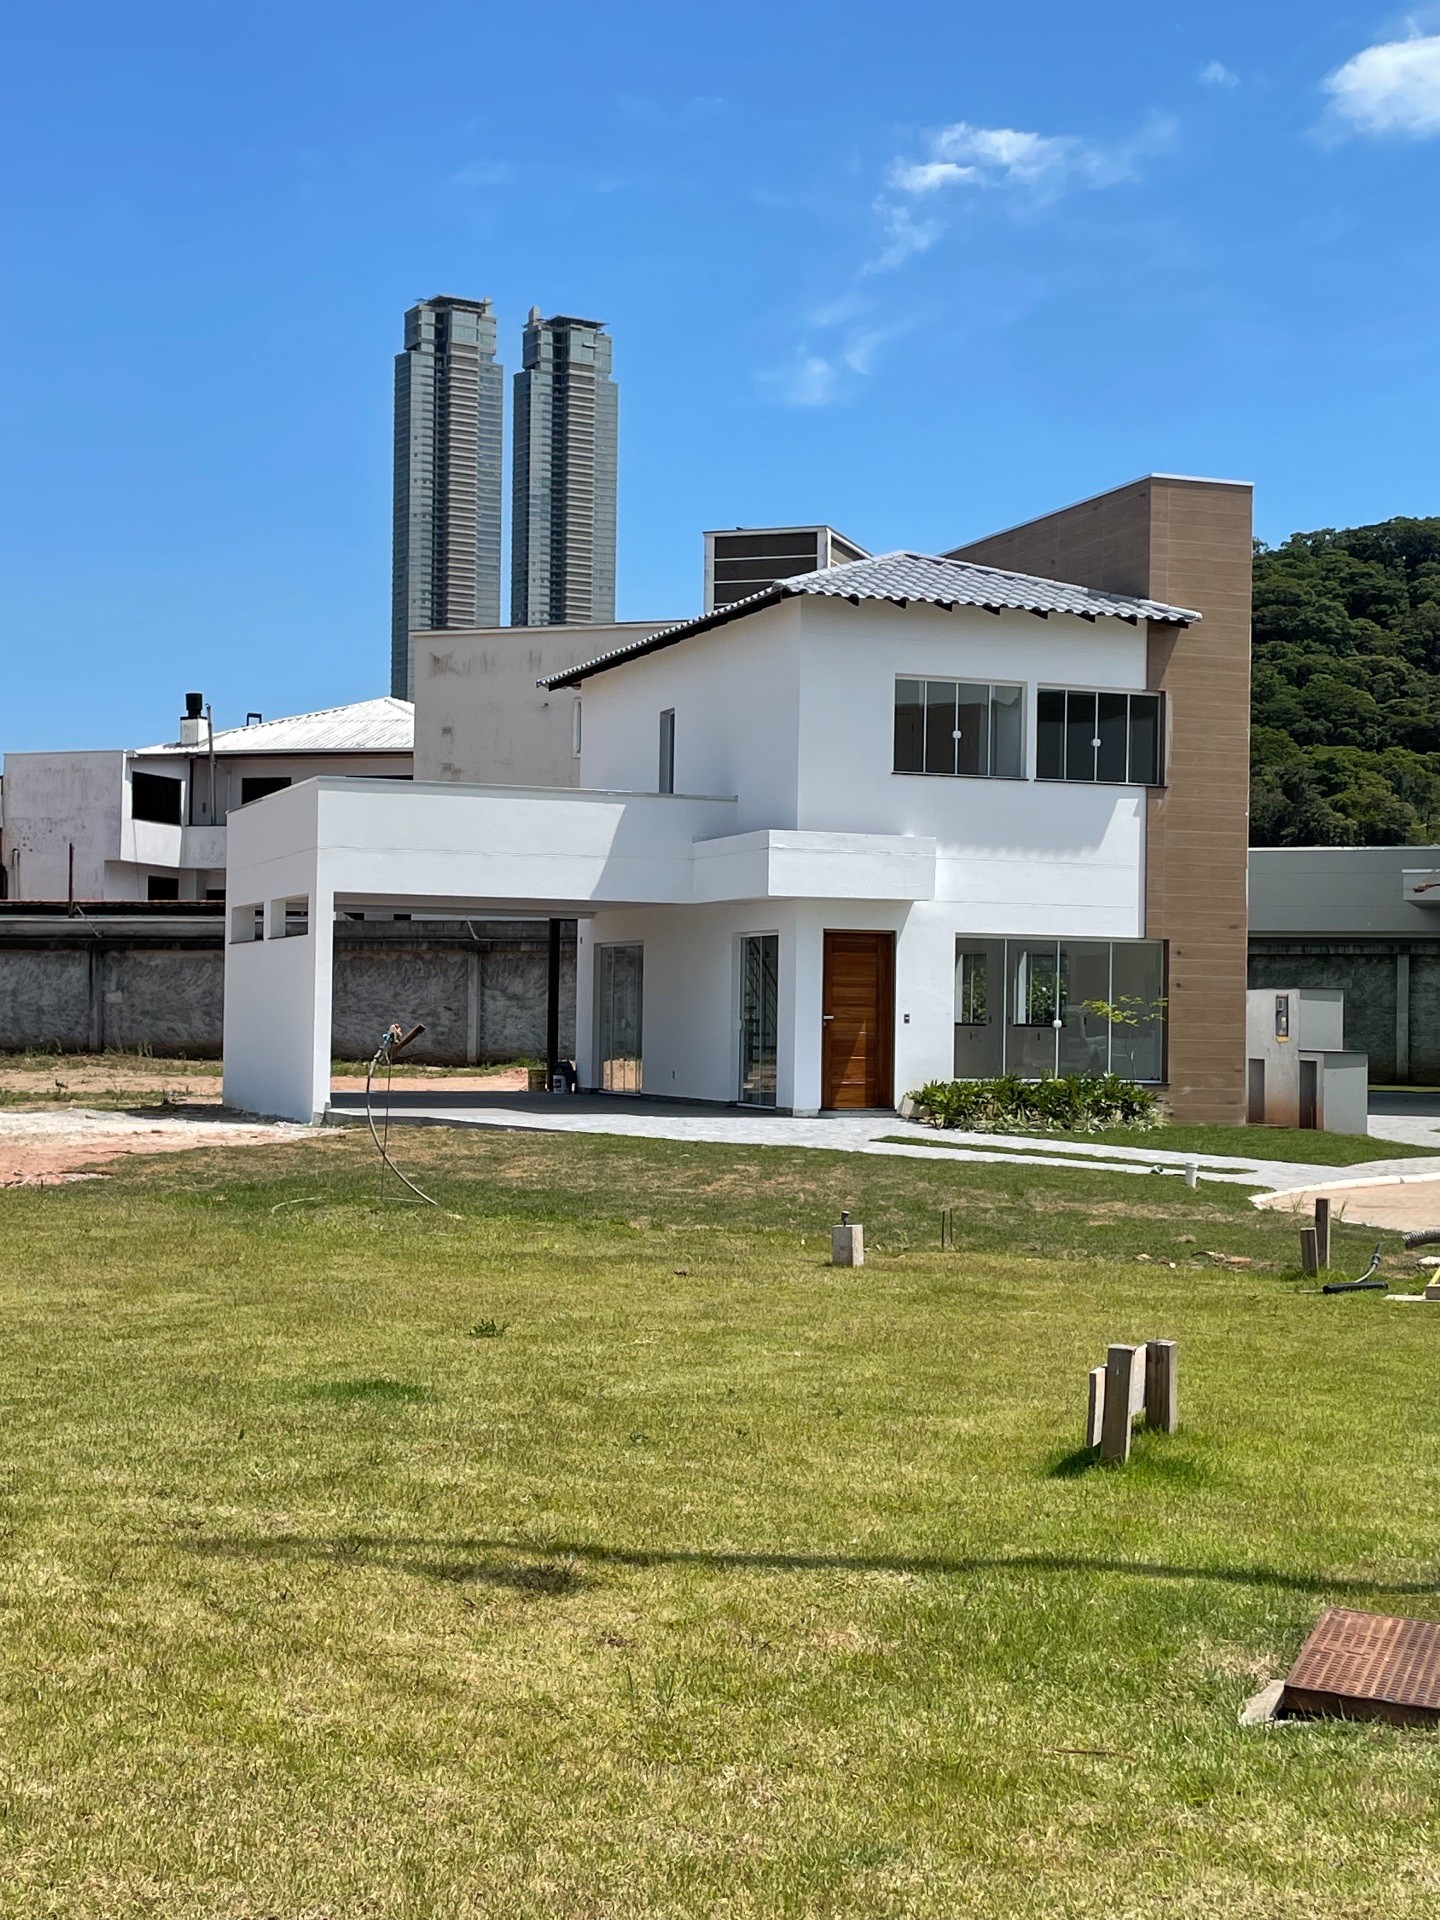 OPORTUNIDADE EXCLUSIVA! Casa em Condomínio possuindo 3 dormitórios (sendo 1 Suíte), 2 vagas de garagem e Condições de Pagamento Facilitadas, Localizada na Barra em Balneário Camboriú!!!